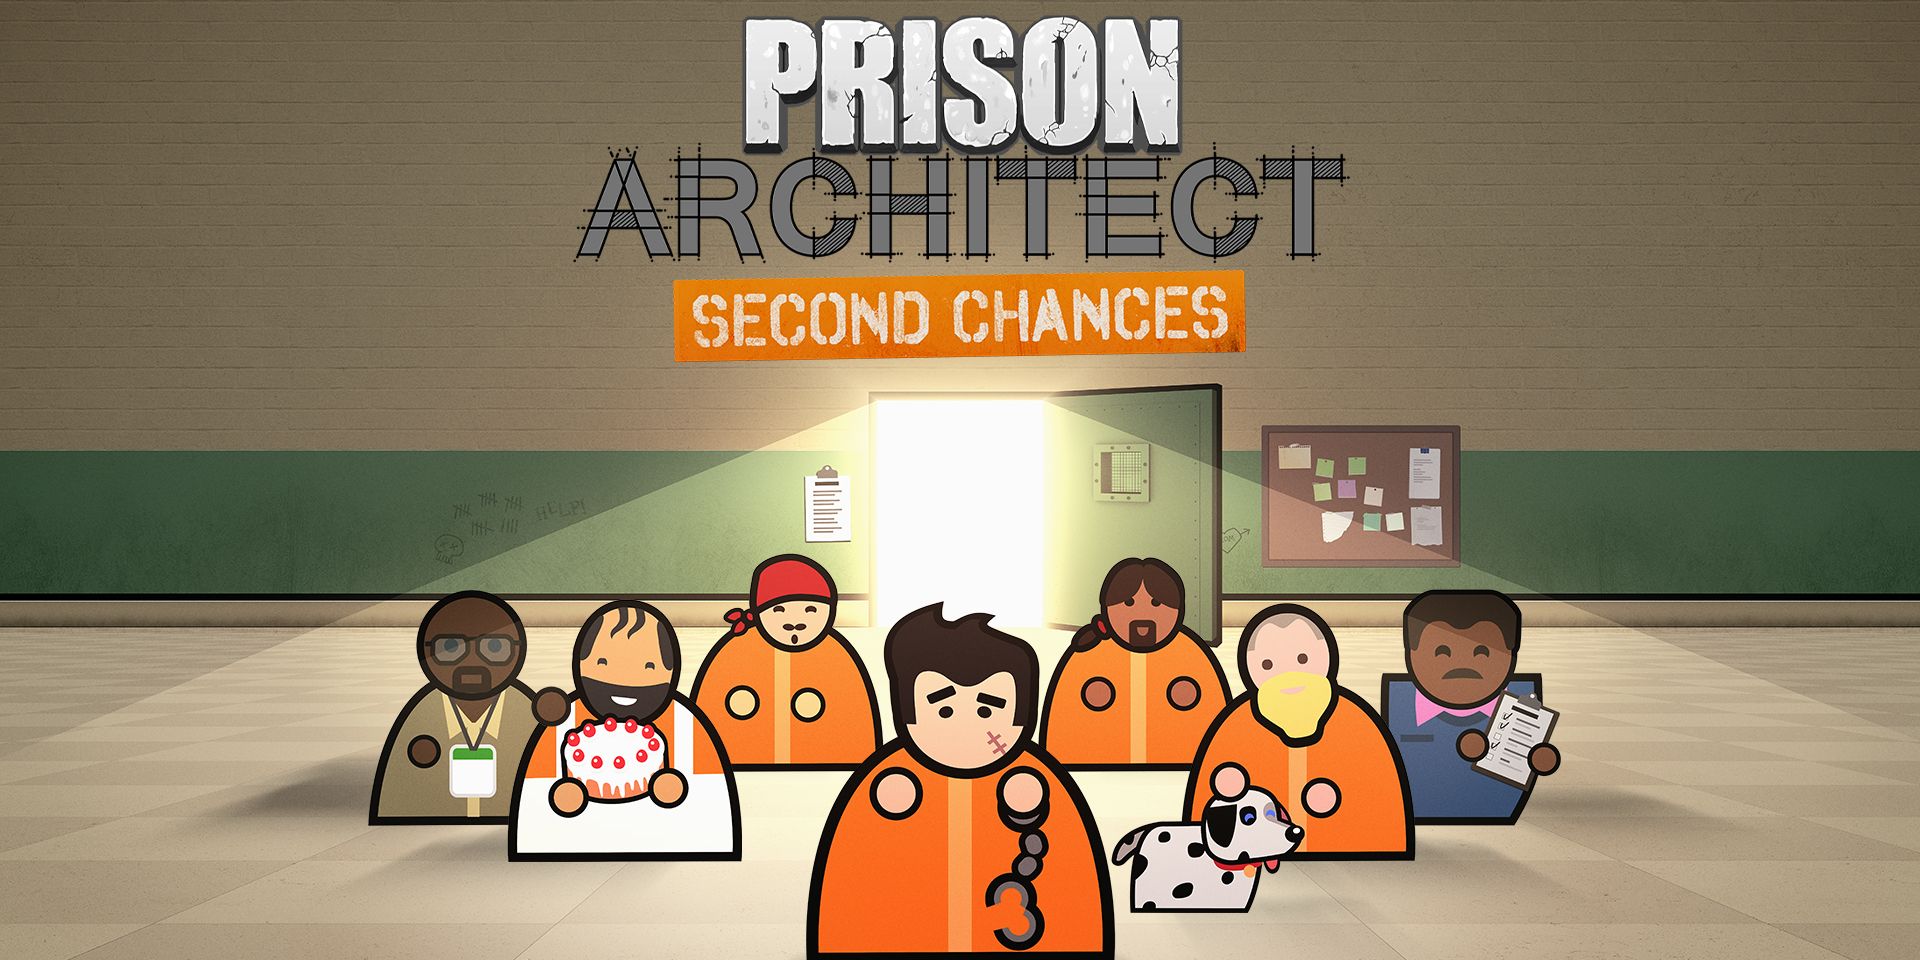 prison architect second chances download free